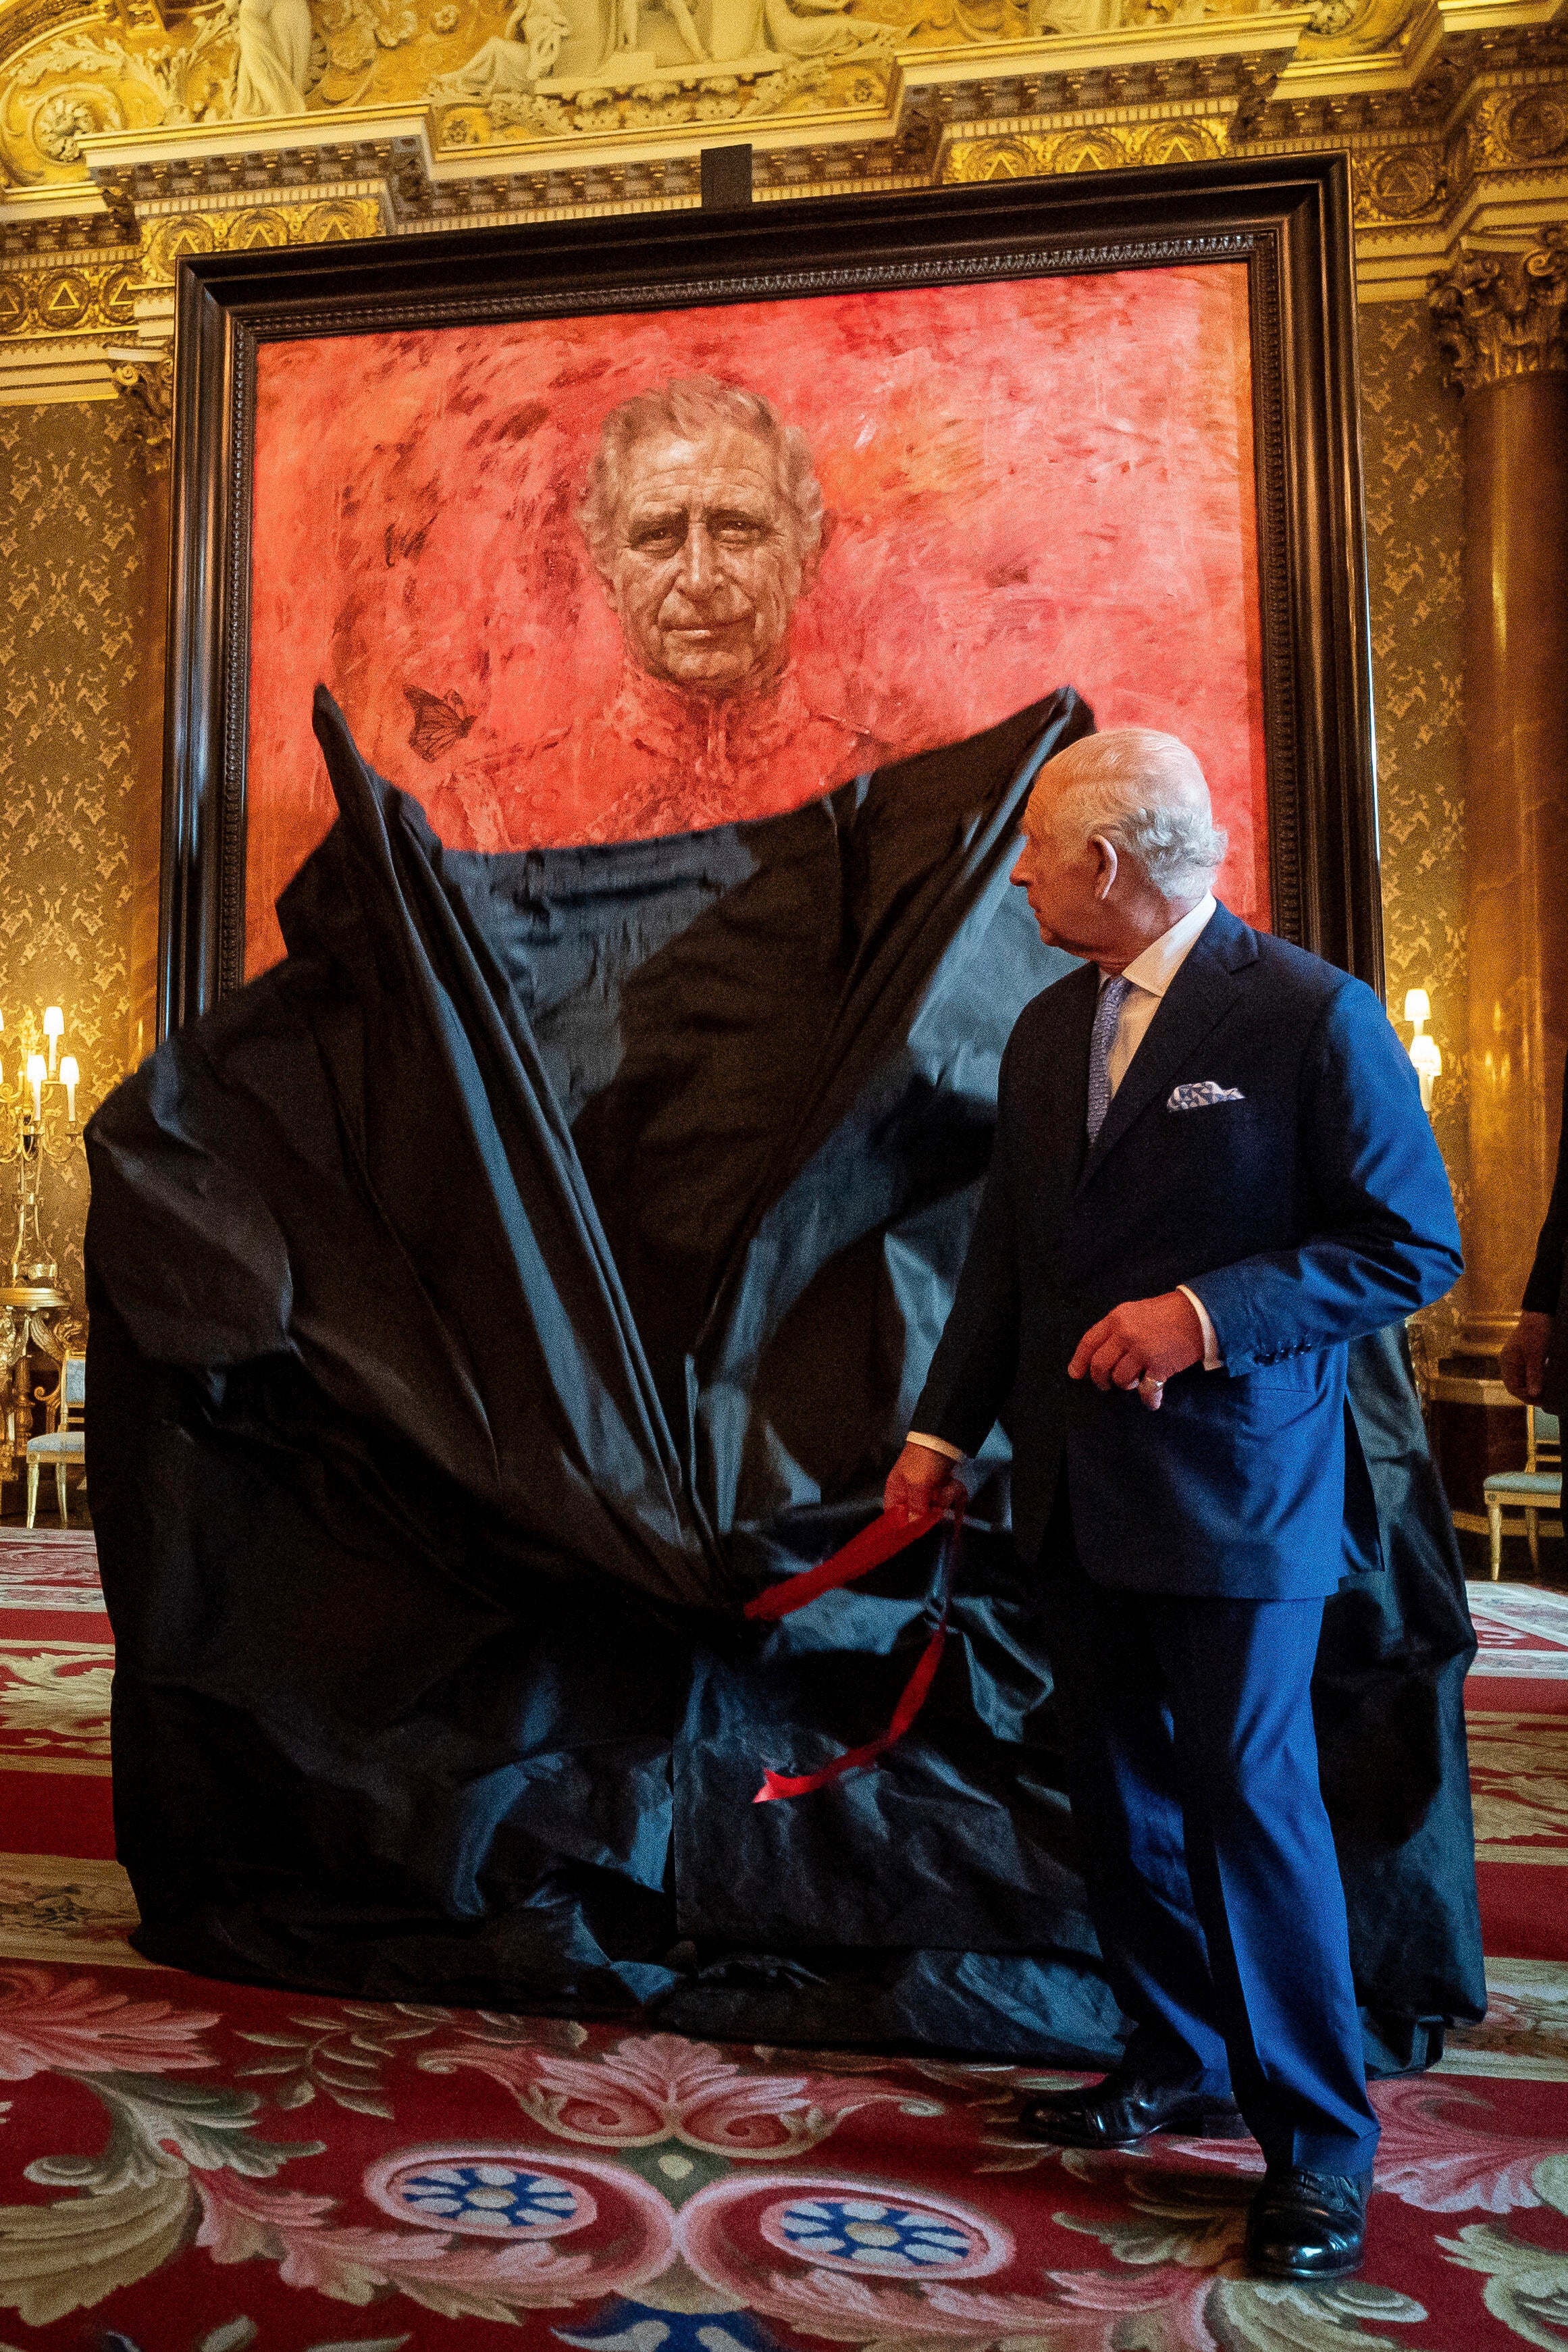 El rey Carlos III inaugura el retrato del monarca realizado por el artista Jonathan Yeo en el salón azul del Palacio de Buckingham